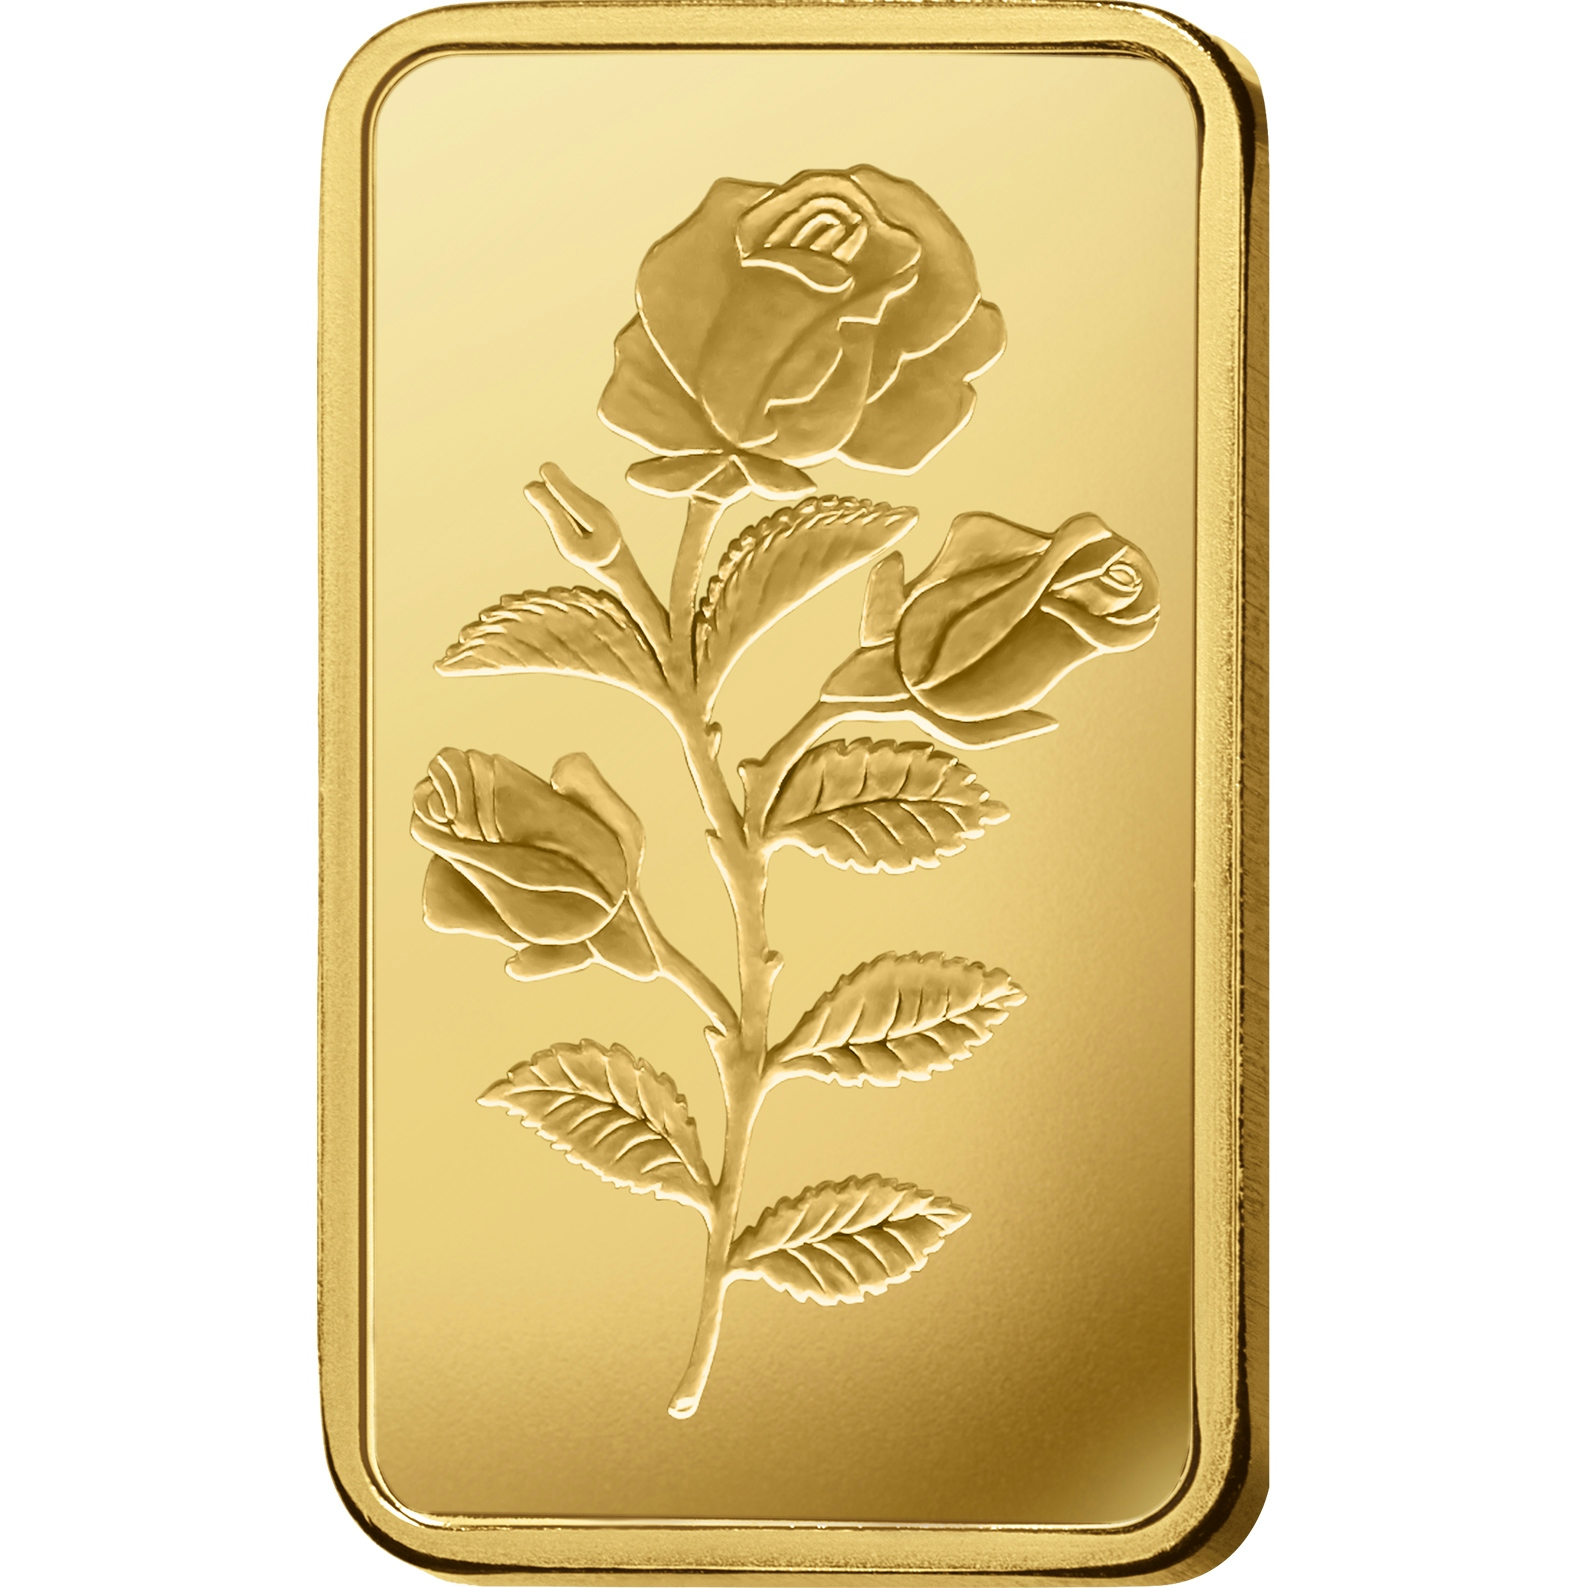 Compare oro, 1 grammo d'oro puro Rosa - PAMP Svizzera - Front